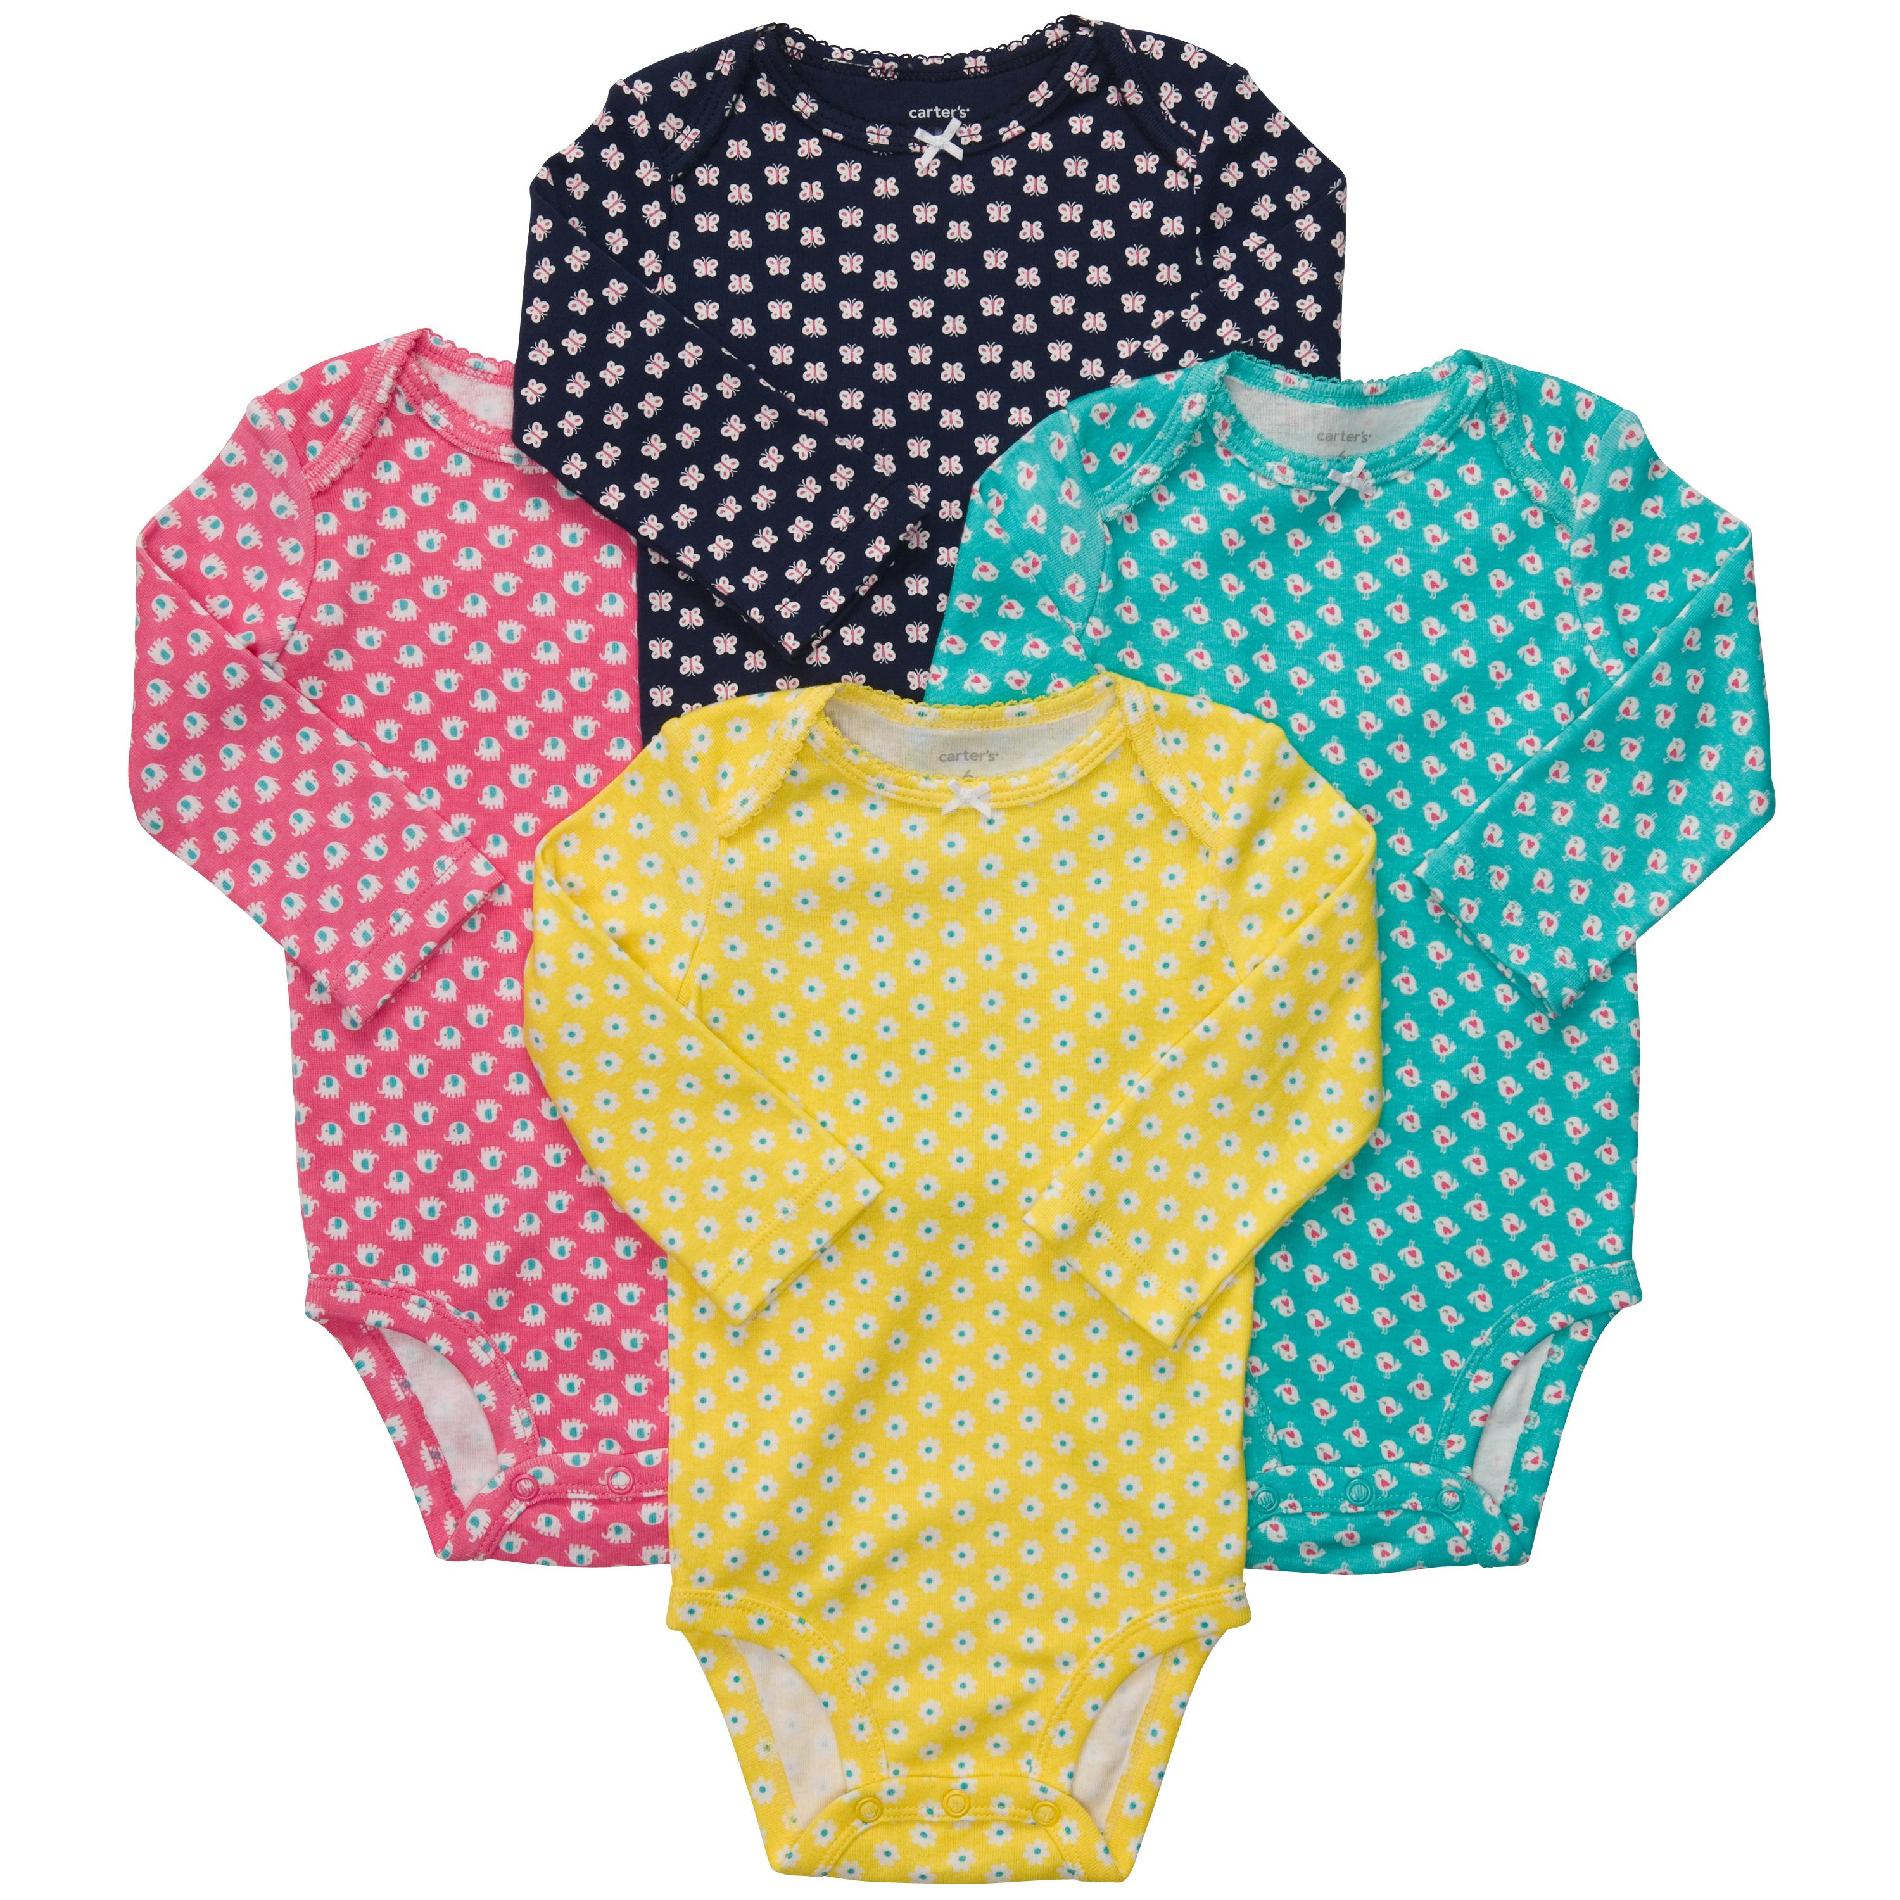 Carter's Newborn & Infant Girl's 4Pk Long-Sleeve Bodysuits